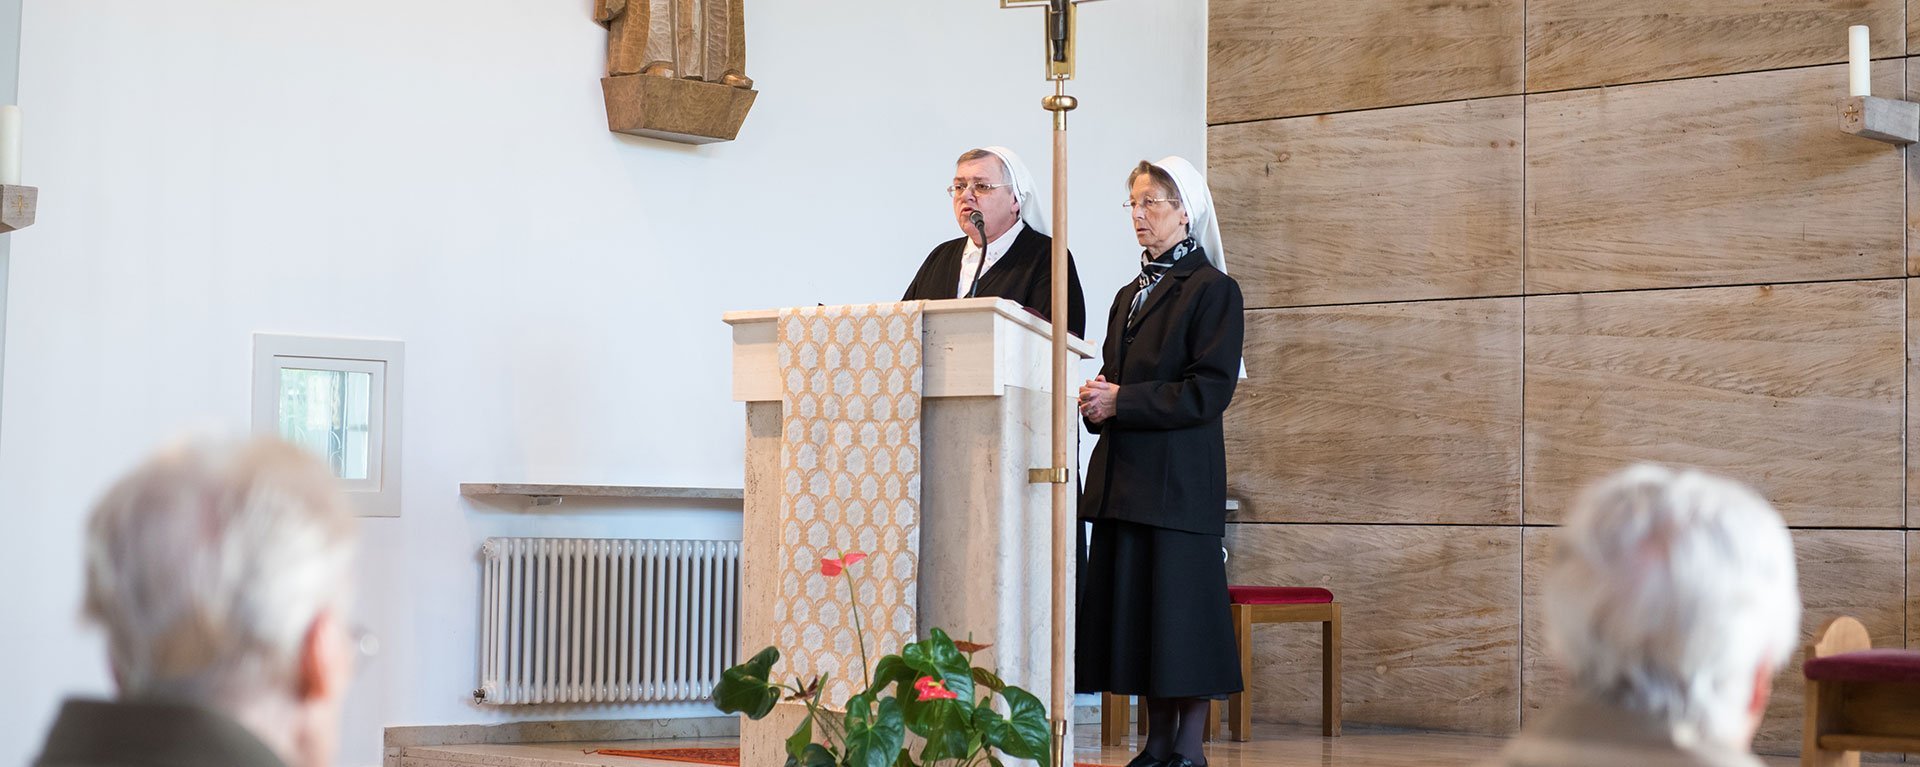 Gottesdienst: zwei Ordensschwestern am Pult - Kirchgänger im Vordergrund